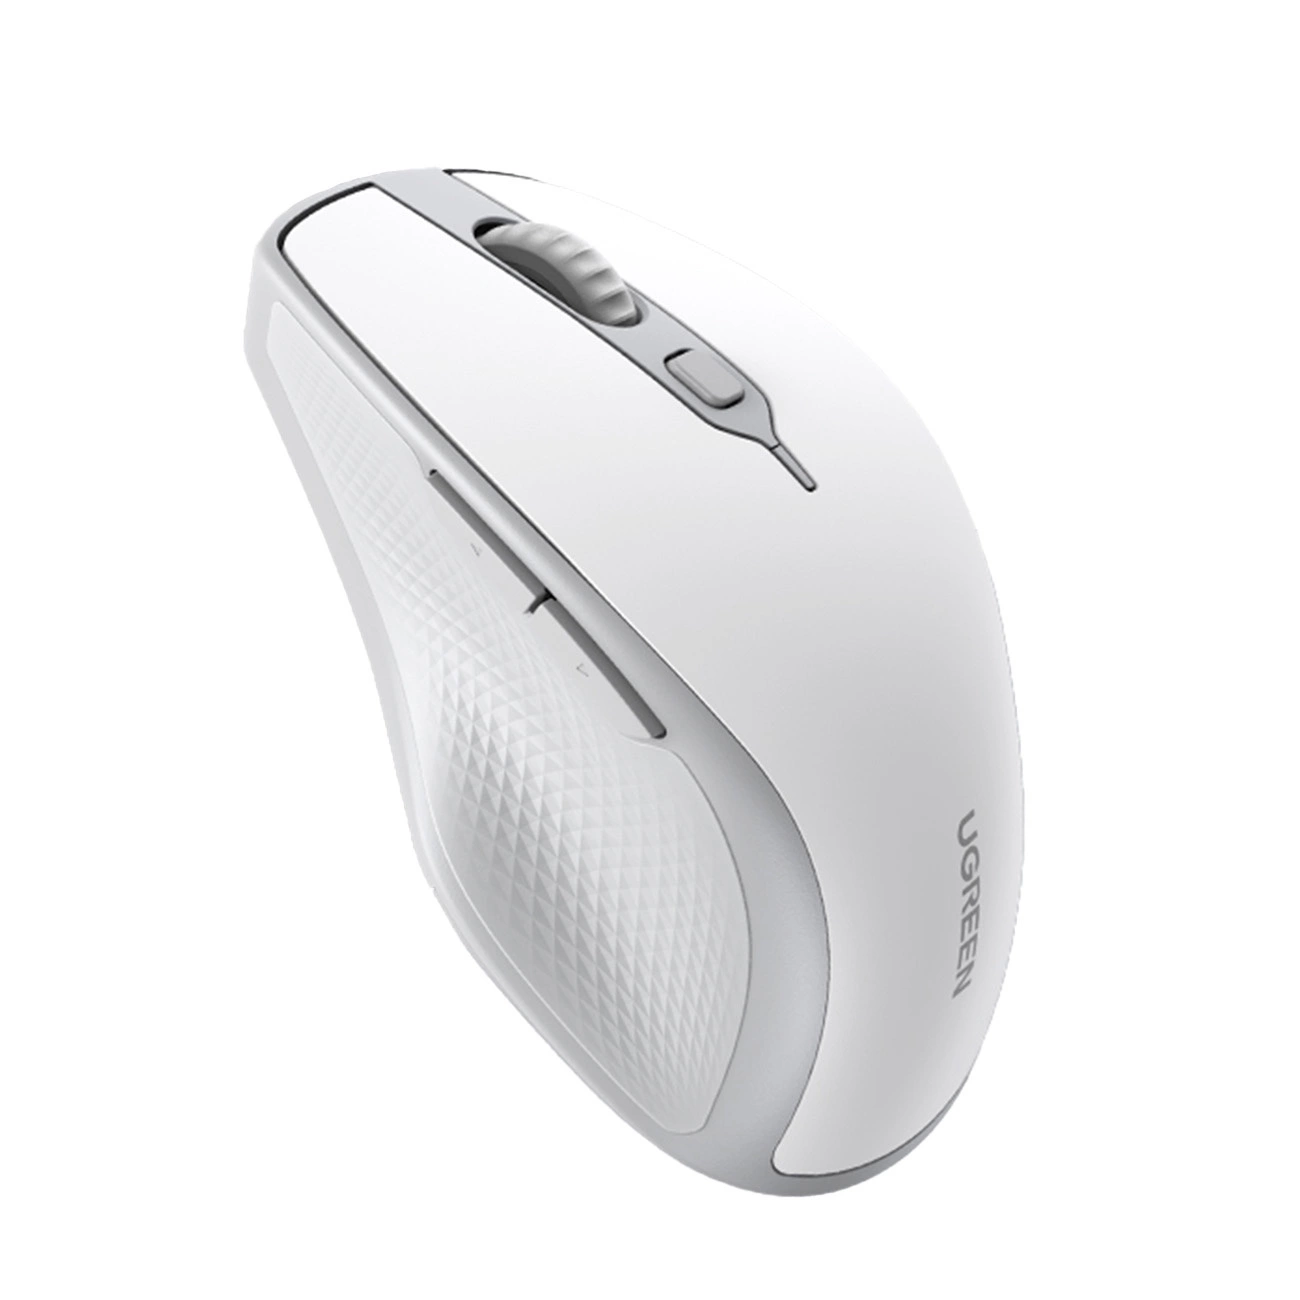 Ugreen MU101 ergonomická bezdrátová myš Bluetooth / 2,4 GHz - bílá